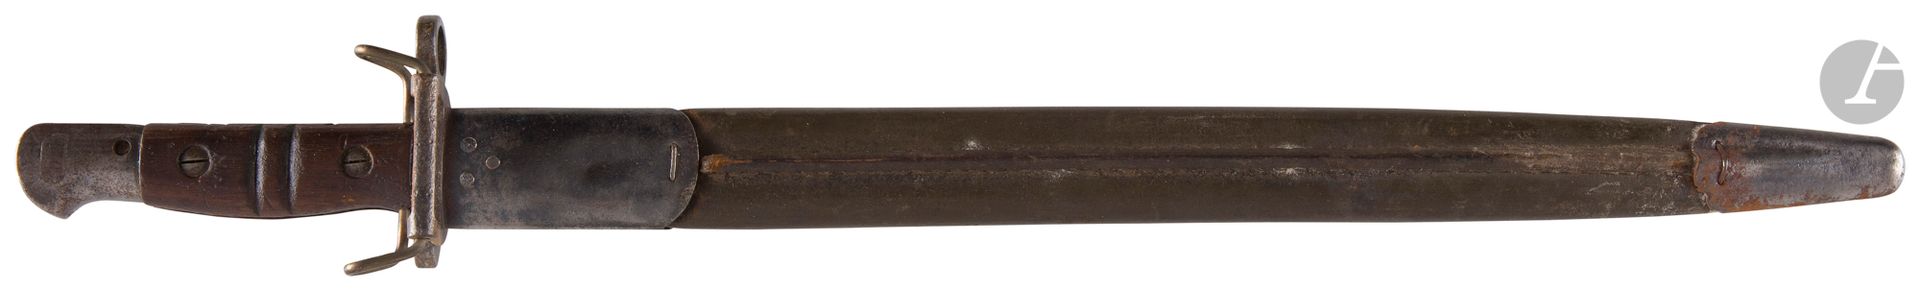 Null 
Baionetta
USA 
modello 1917. 
Maniglia con piastre di legno. Telaio in fer&hellip;